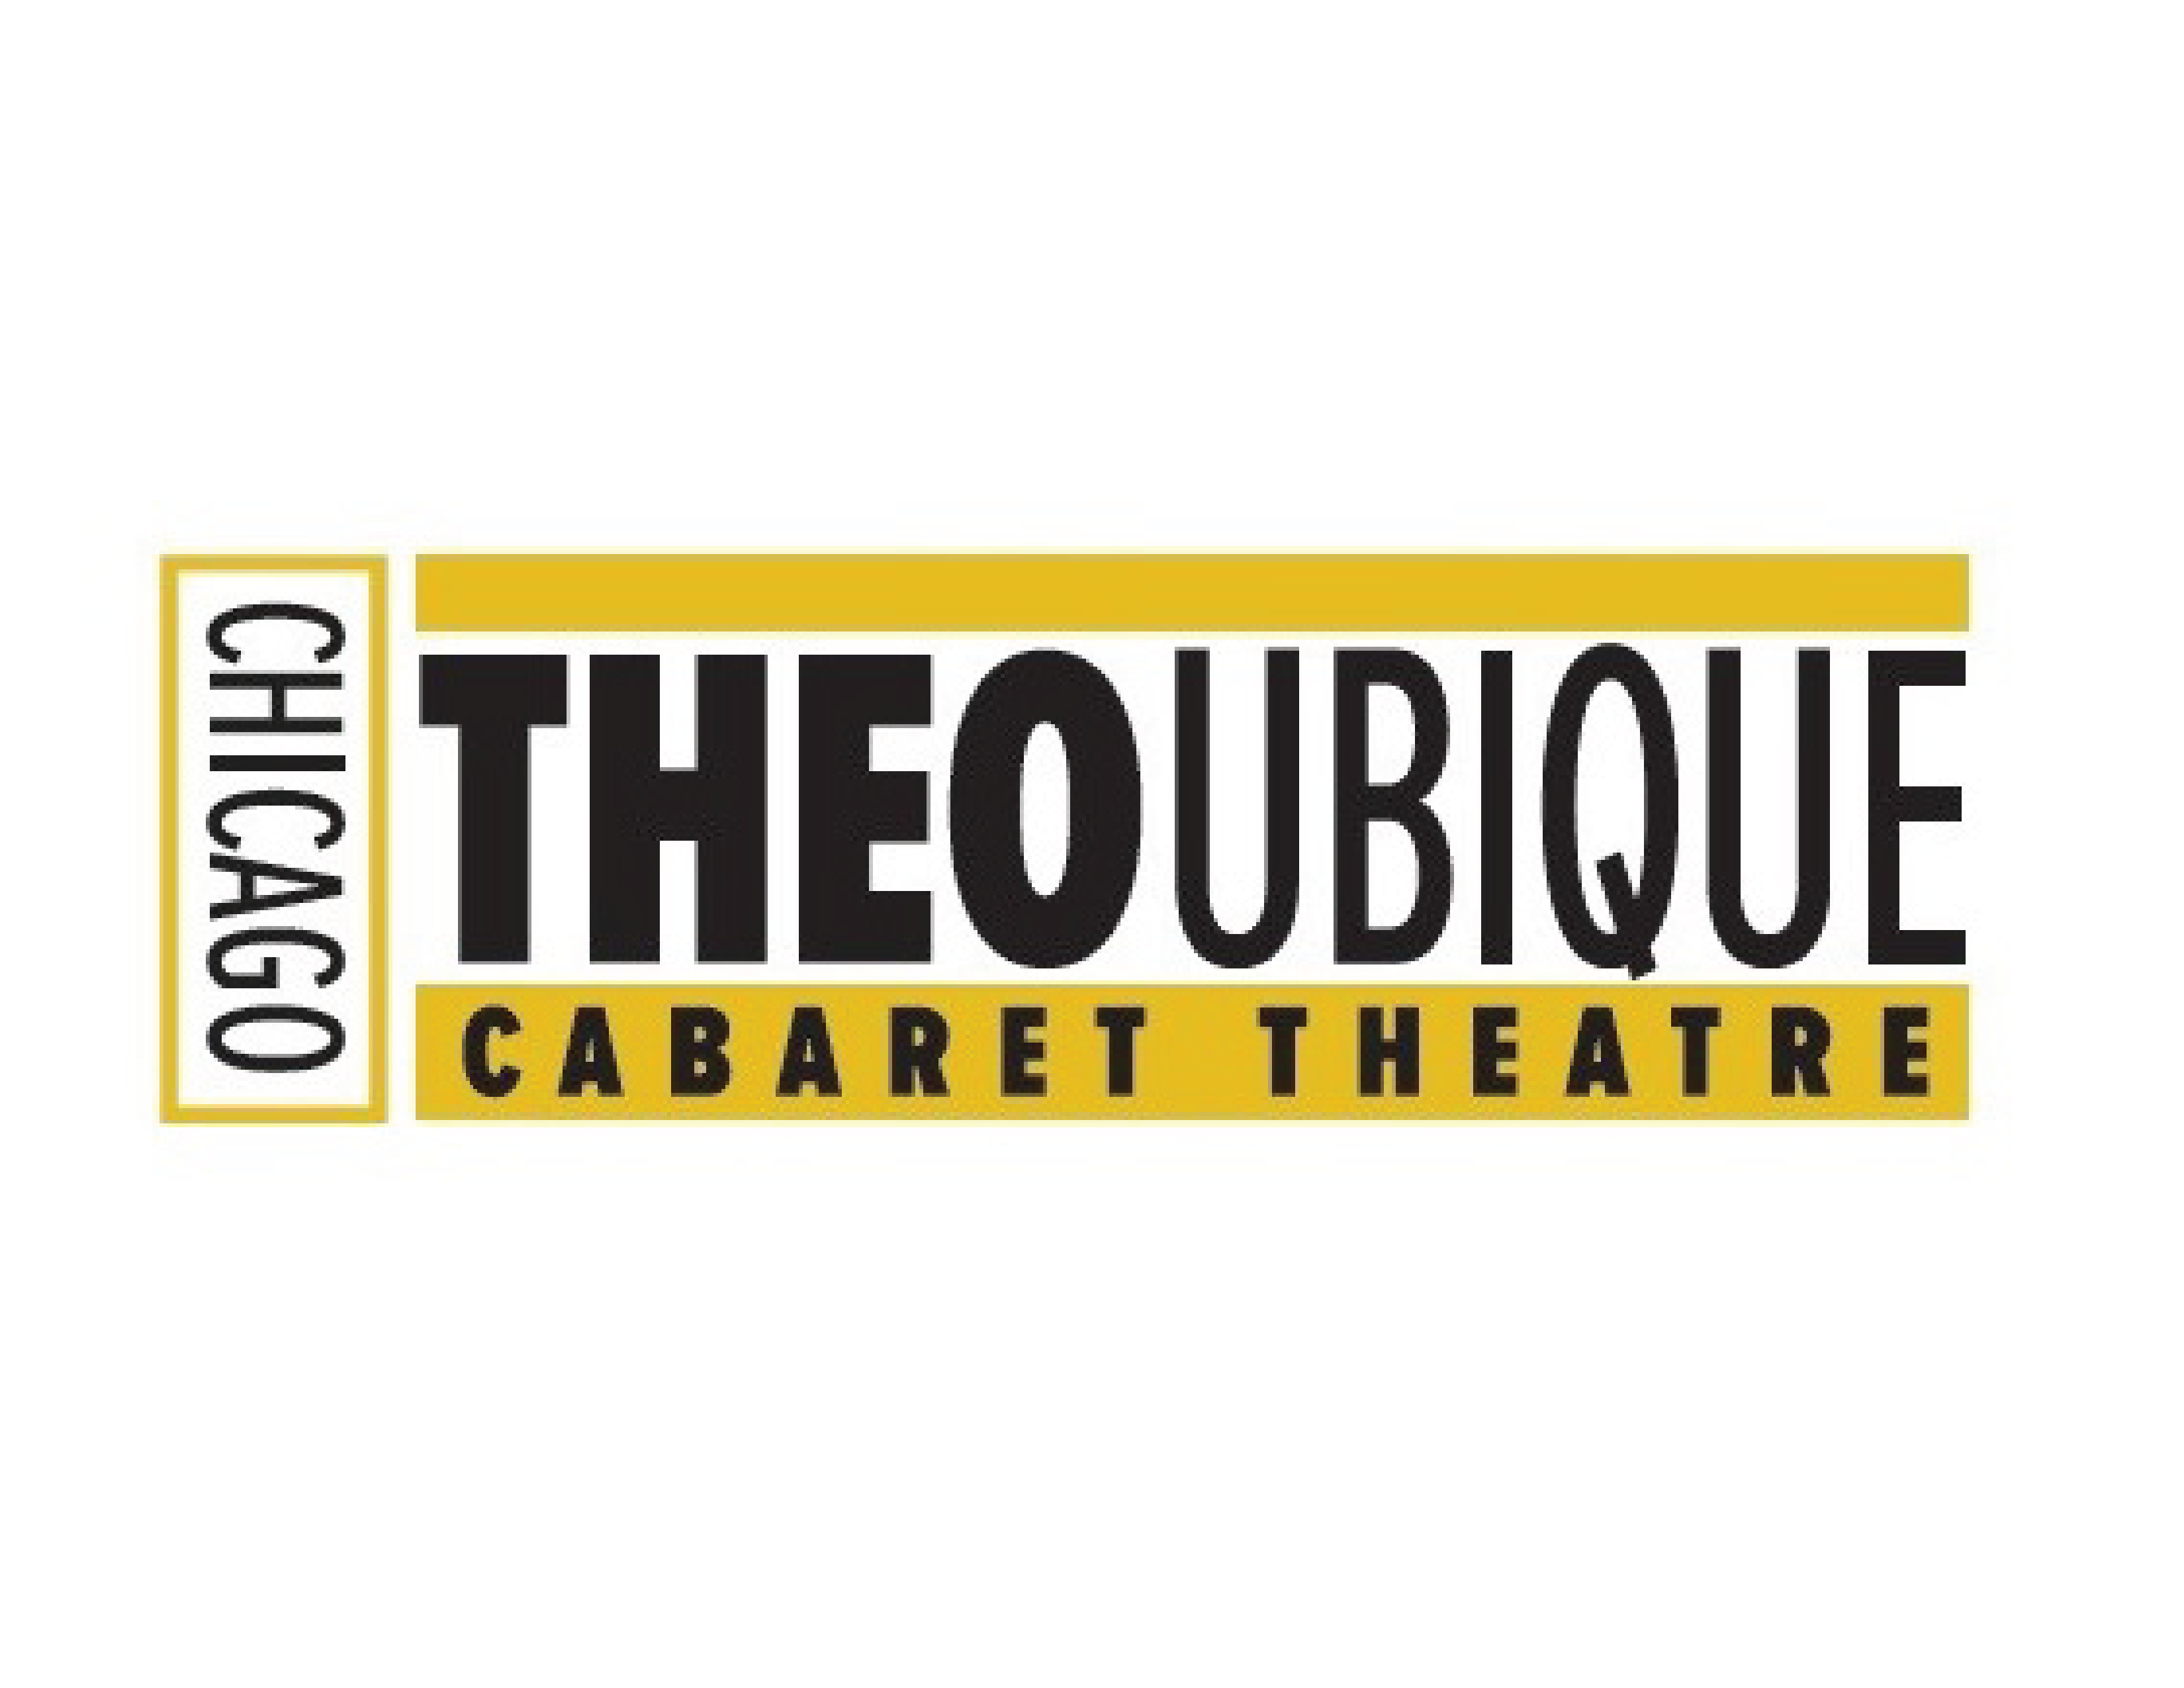 Theo Ubique Cabaret Theatre Old Logo